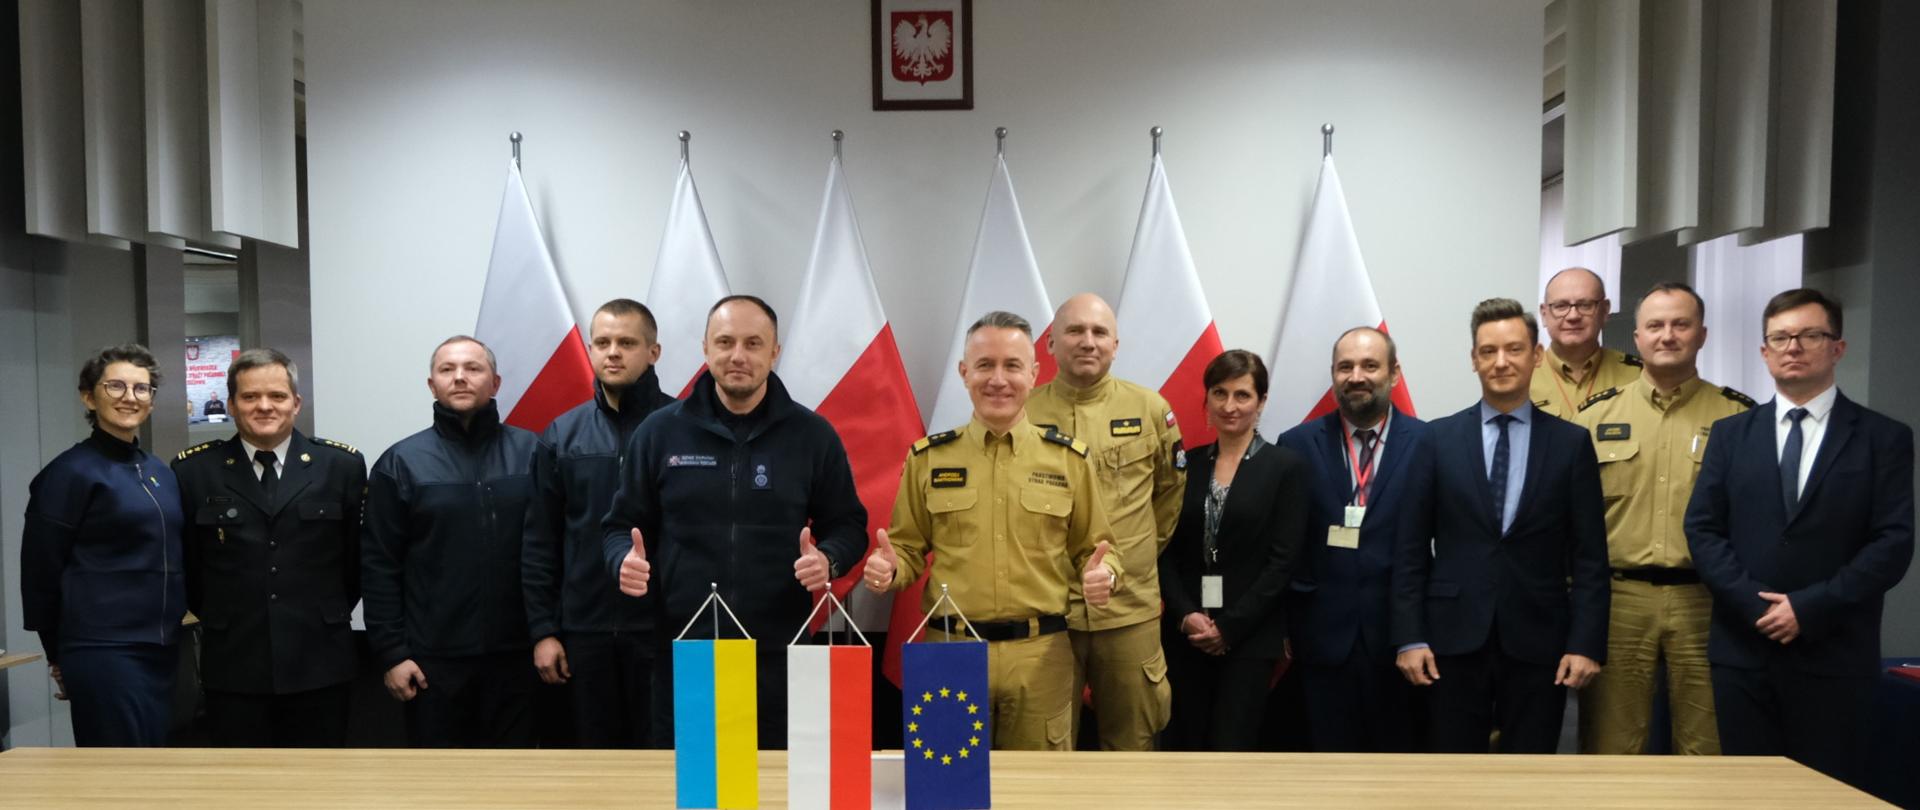 Na zdjęciu widać jak komendant główny PSP wraz z Sergiejem Krukiem oraz wszystkimi zebranymi przedstawicielami pozują do wspólnego zdjęcia. 